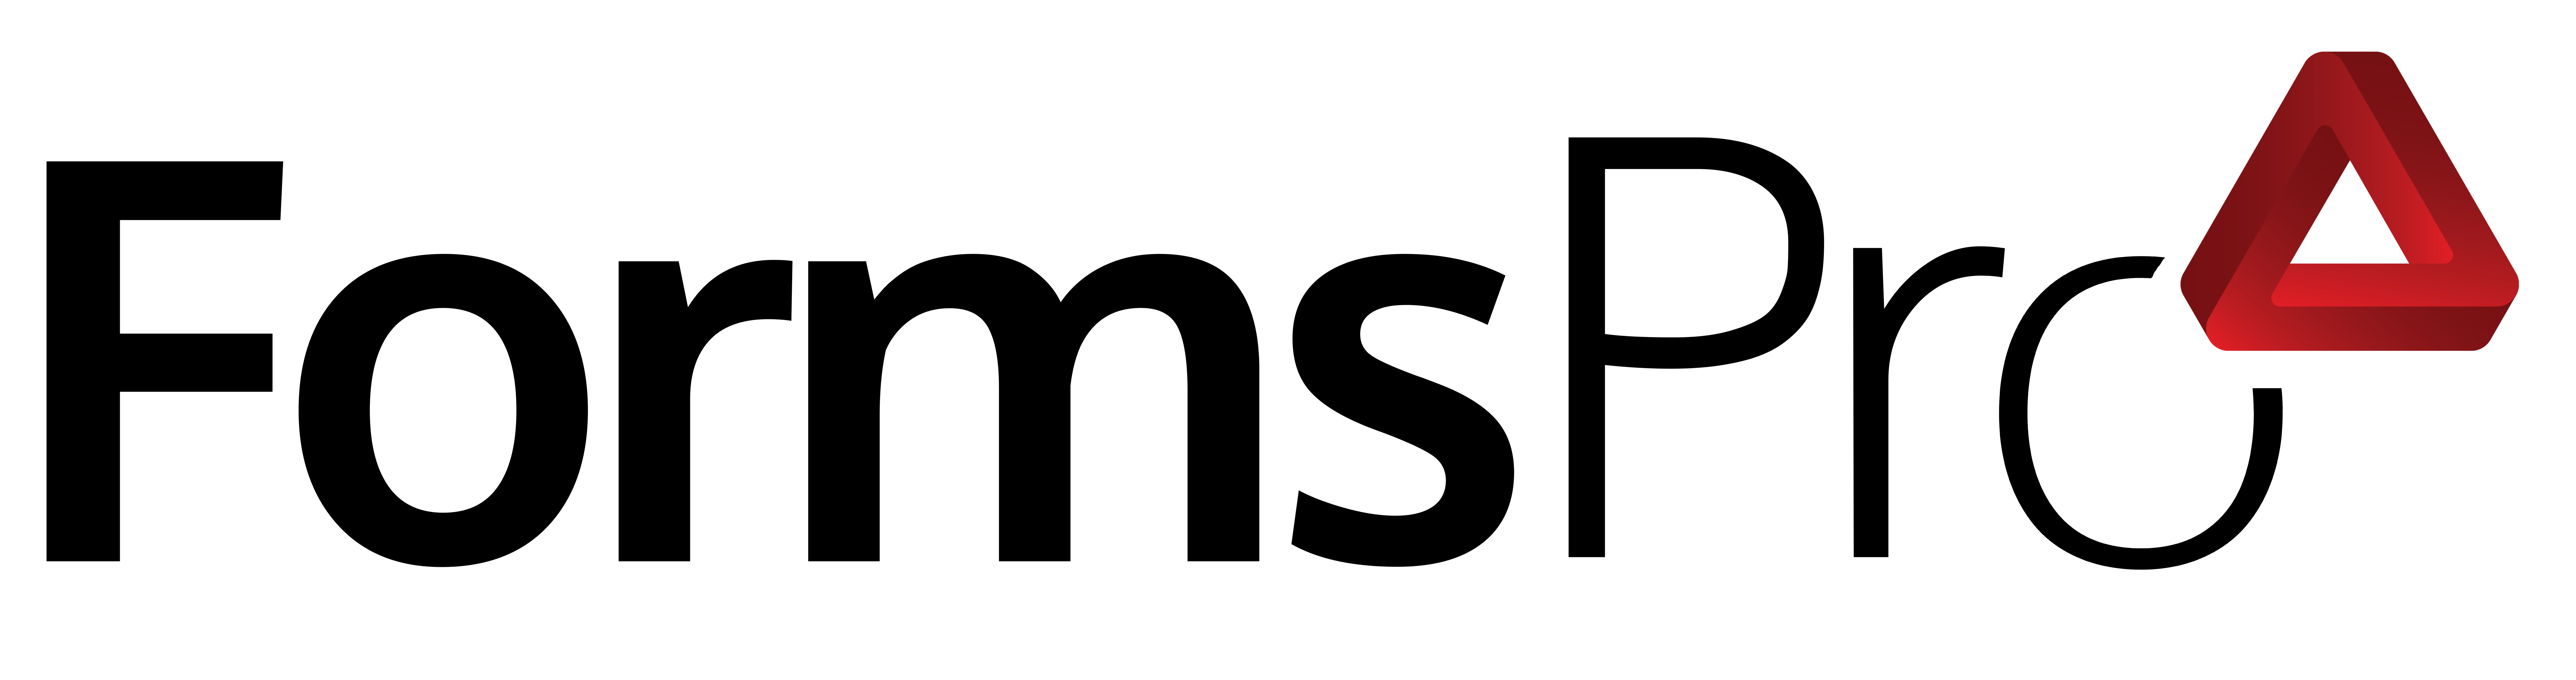 FormsPro - PNG Black Letters Transparent Logo 7-2021